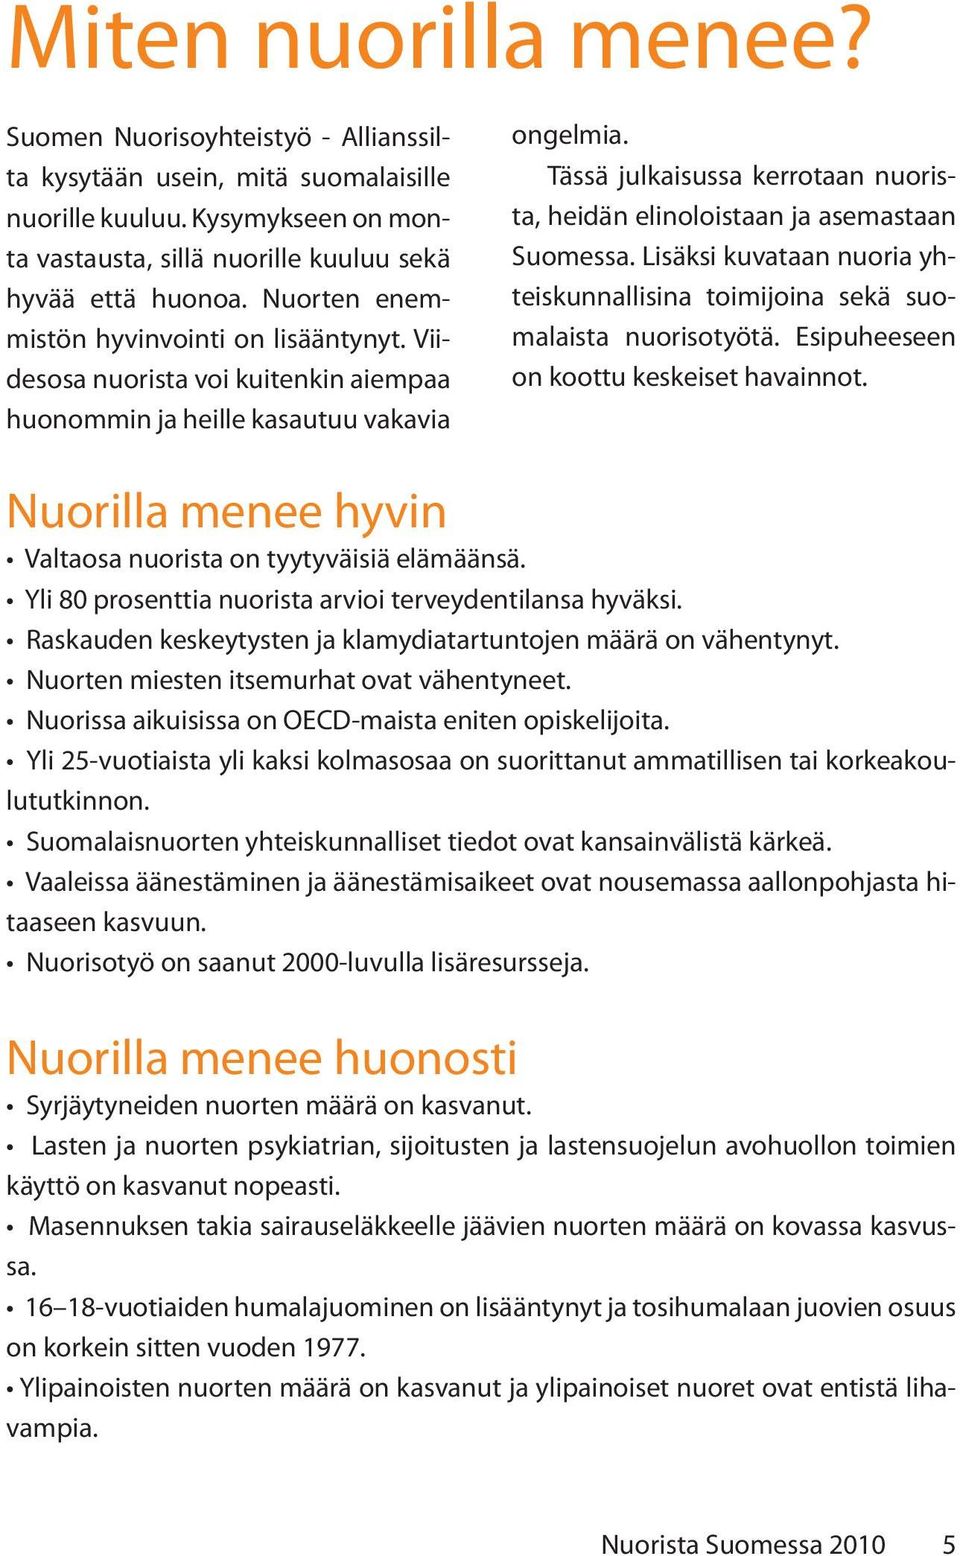 Tässä julkaisussa kerrotaan nuorista, heidän elinoloistaan ja asemastaan Suomessa. Lisäksi kuvataan nuoria yhteiskunnallisina toimijoina sekä suomalaista nuorisotyötä.